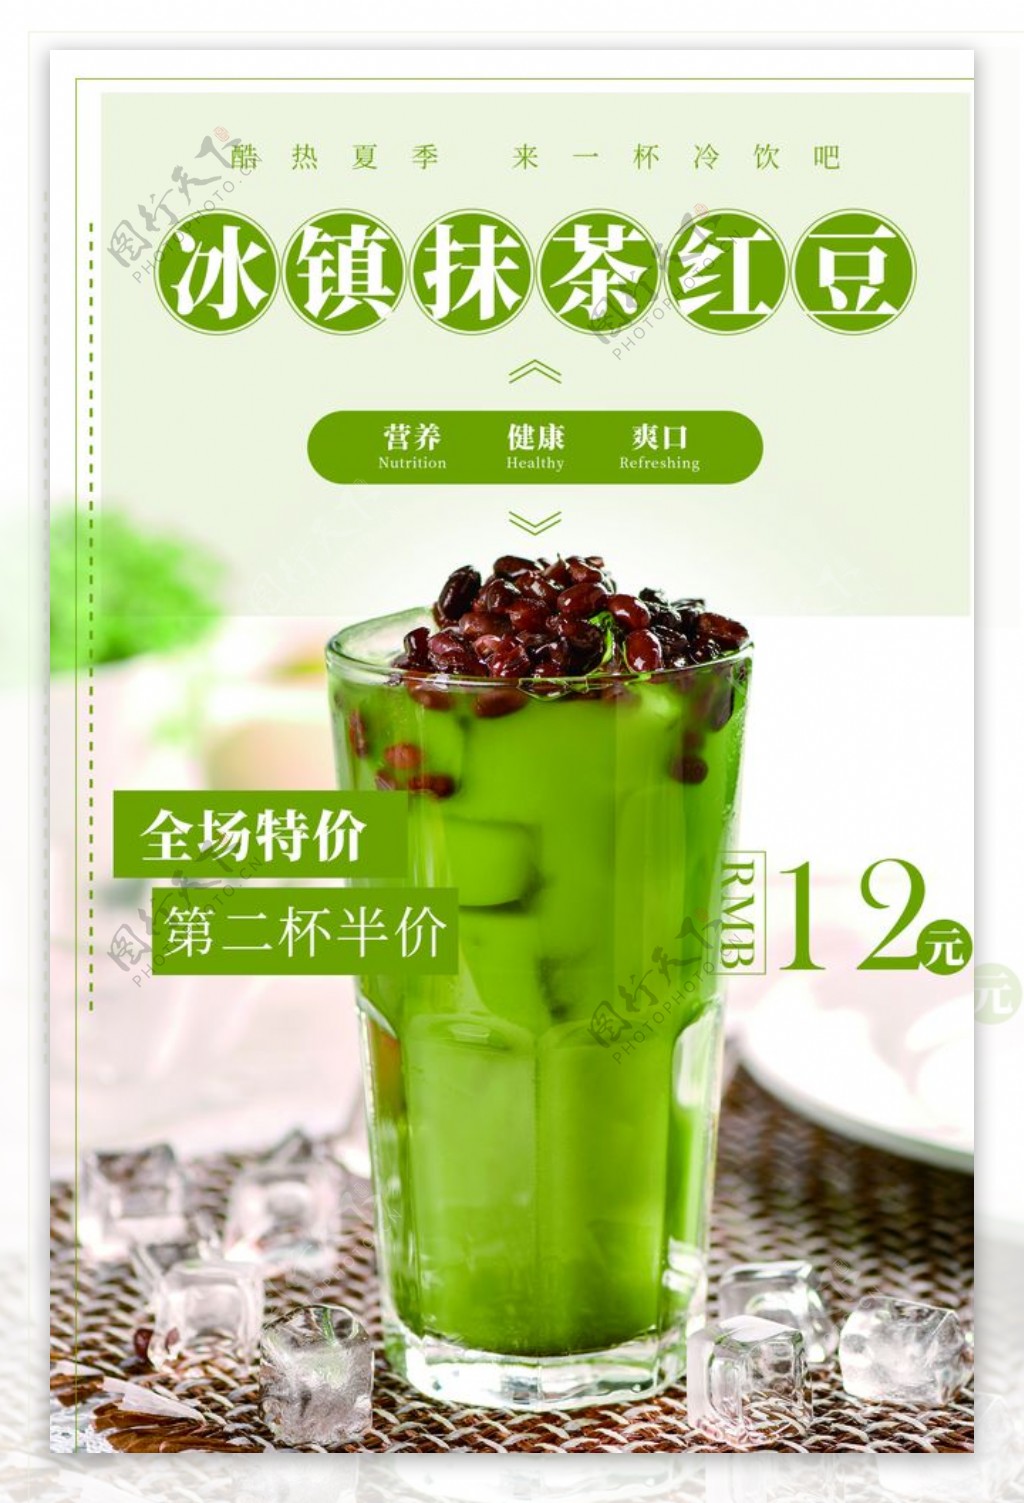 抹茶红豆饮料活动宣传海报素材图片